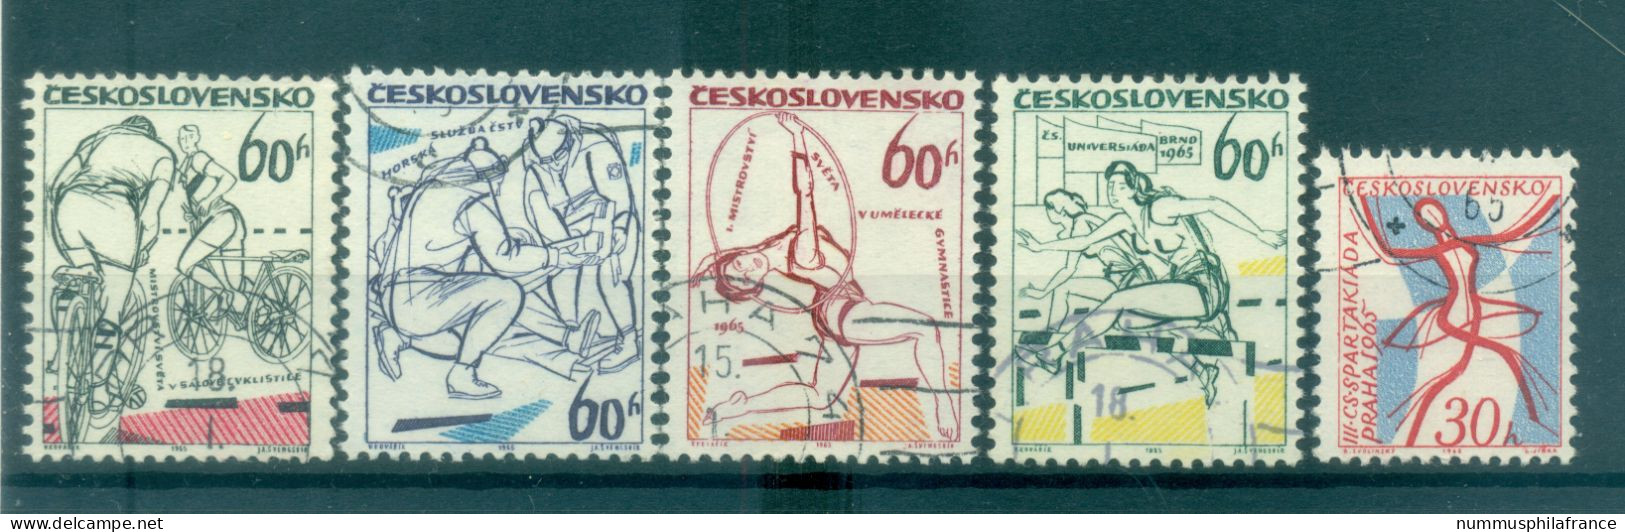 Tchécoslovaquie 1965 - Y & T N. 1369/73 - Evénements Sportifs (Michel N. 1503-1504/07) - Used Stamps